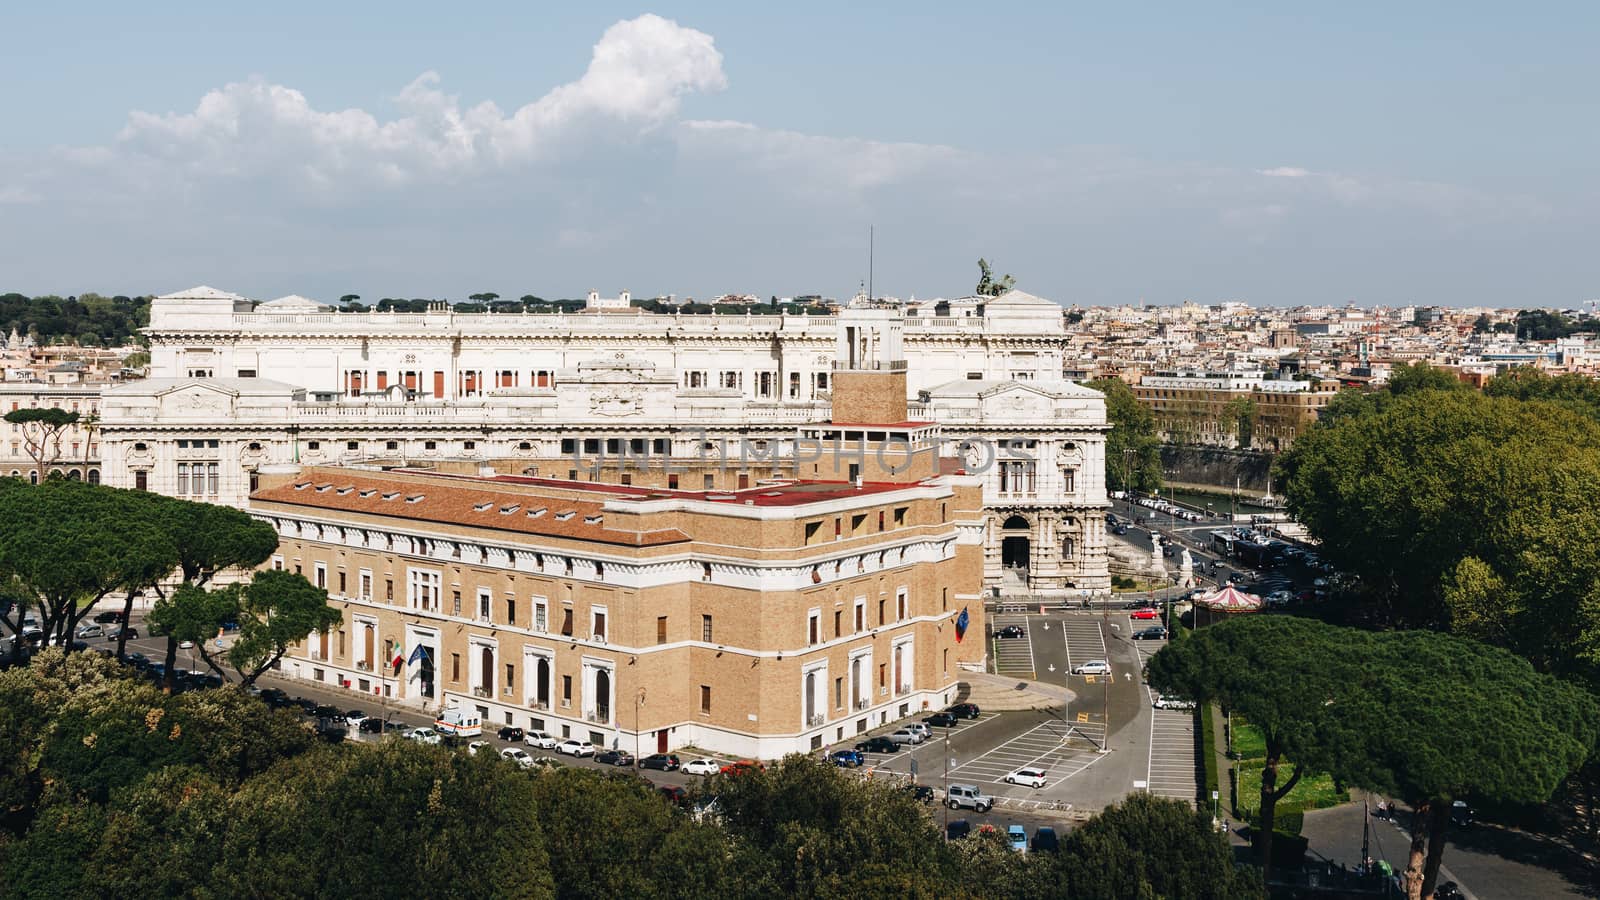 Corte Suprema di Cassazione in Rome, Italy. View from Castel San by DaLiu